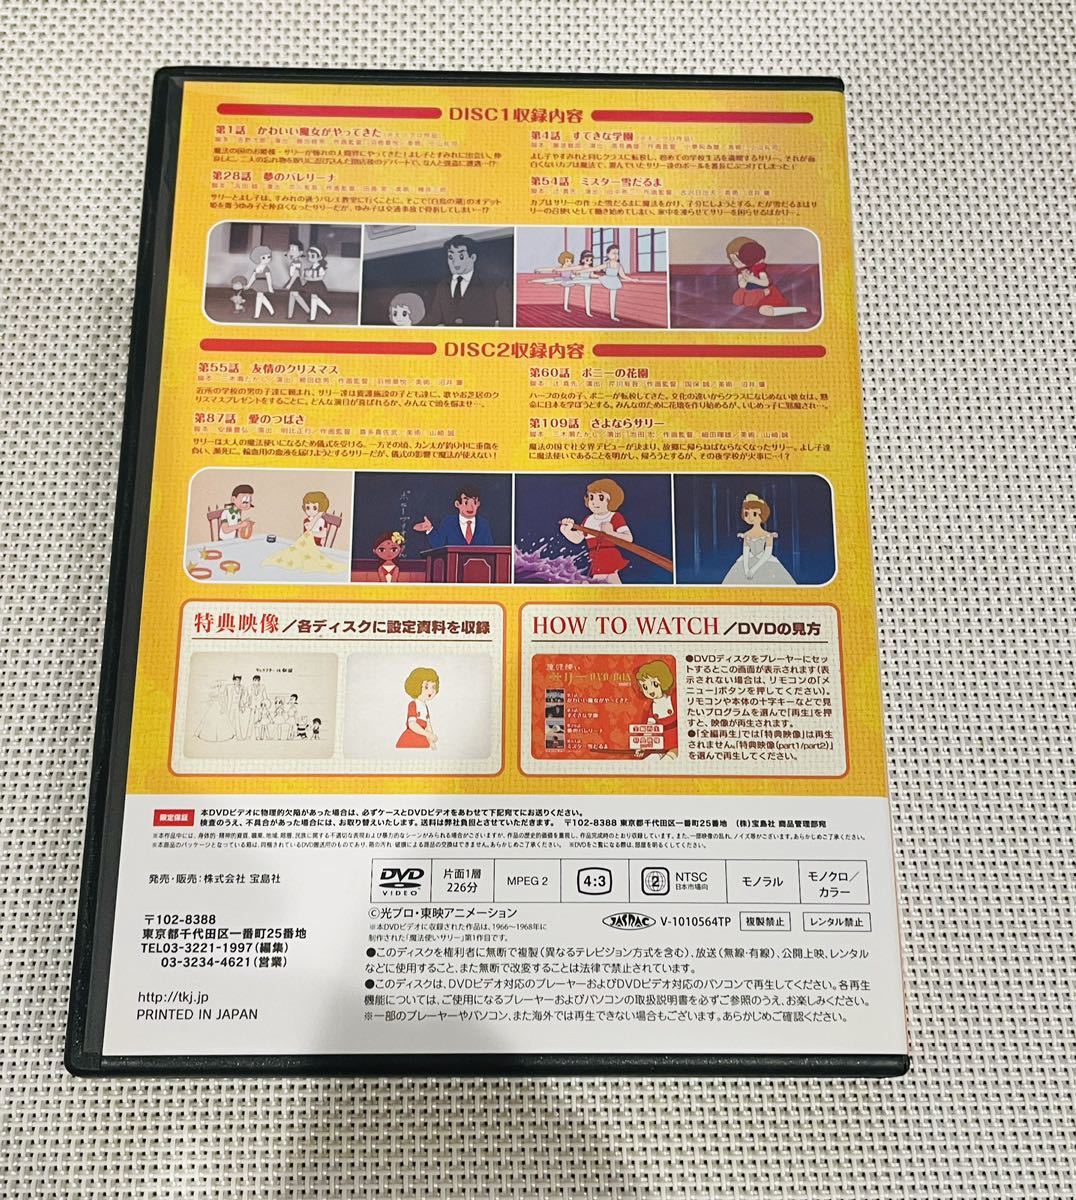 魔法使いサリー DVDBOX 2枚組 アニメ8話収録 送料無料 アニメ の画像4